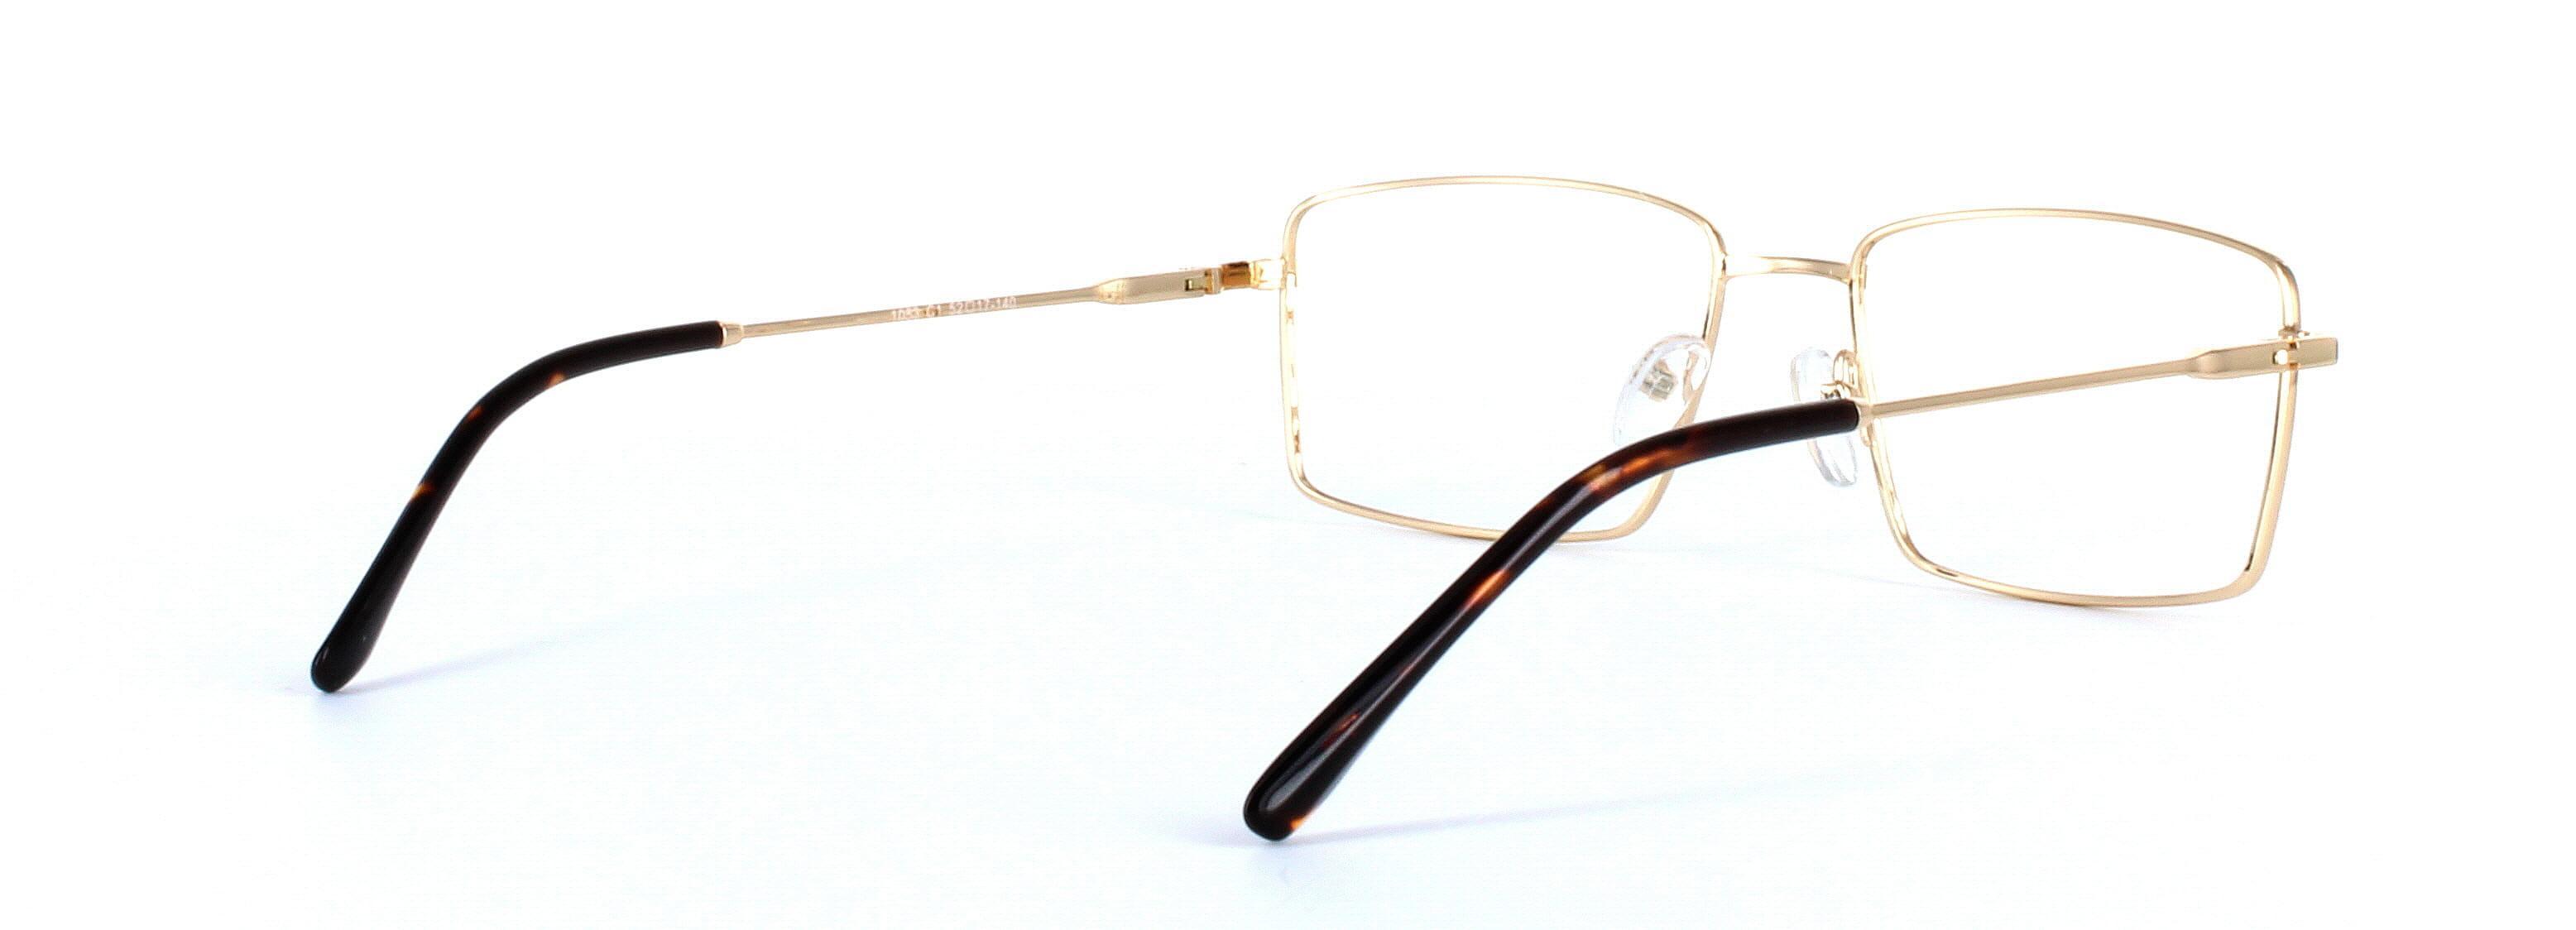 Catan Gold Full Rim Rectangular Metal Glasses - Image View 4